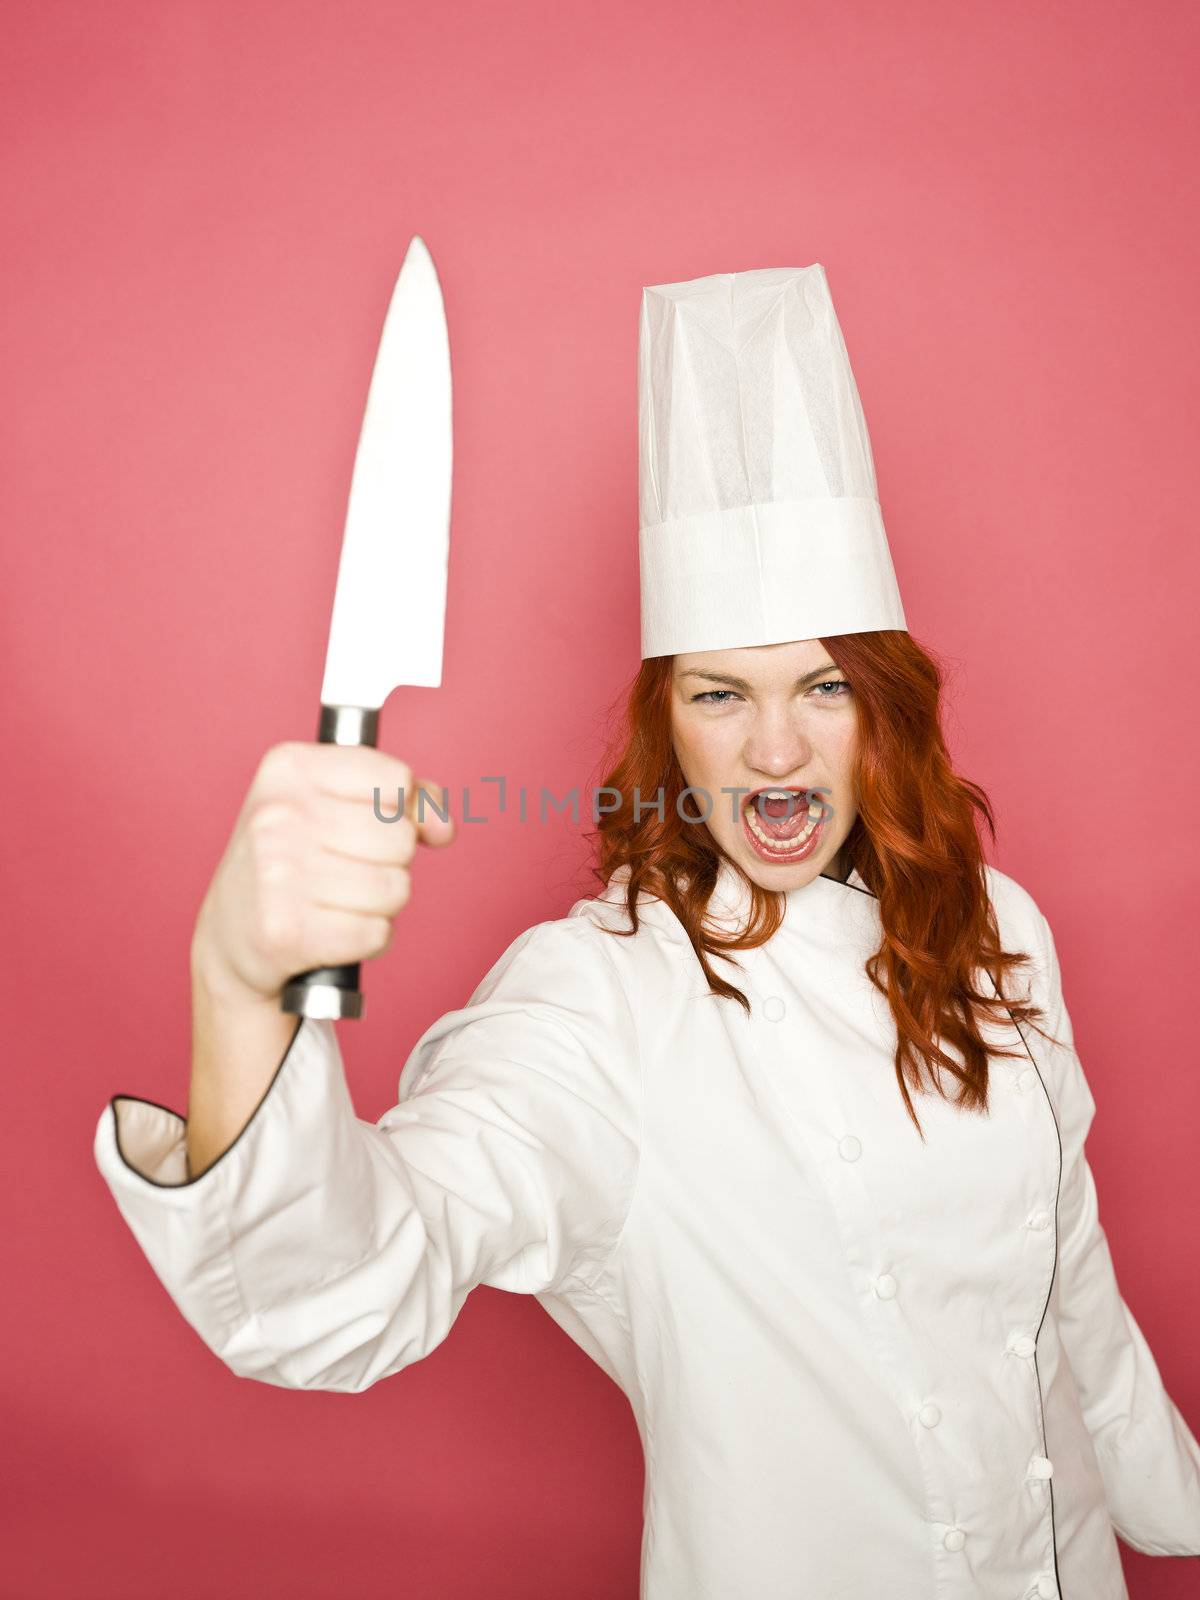 Female chef by gemenacom